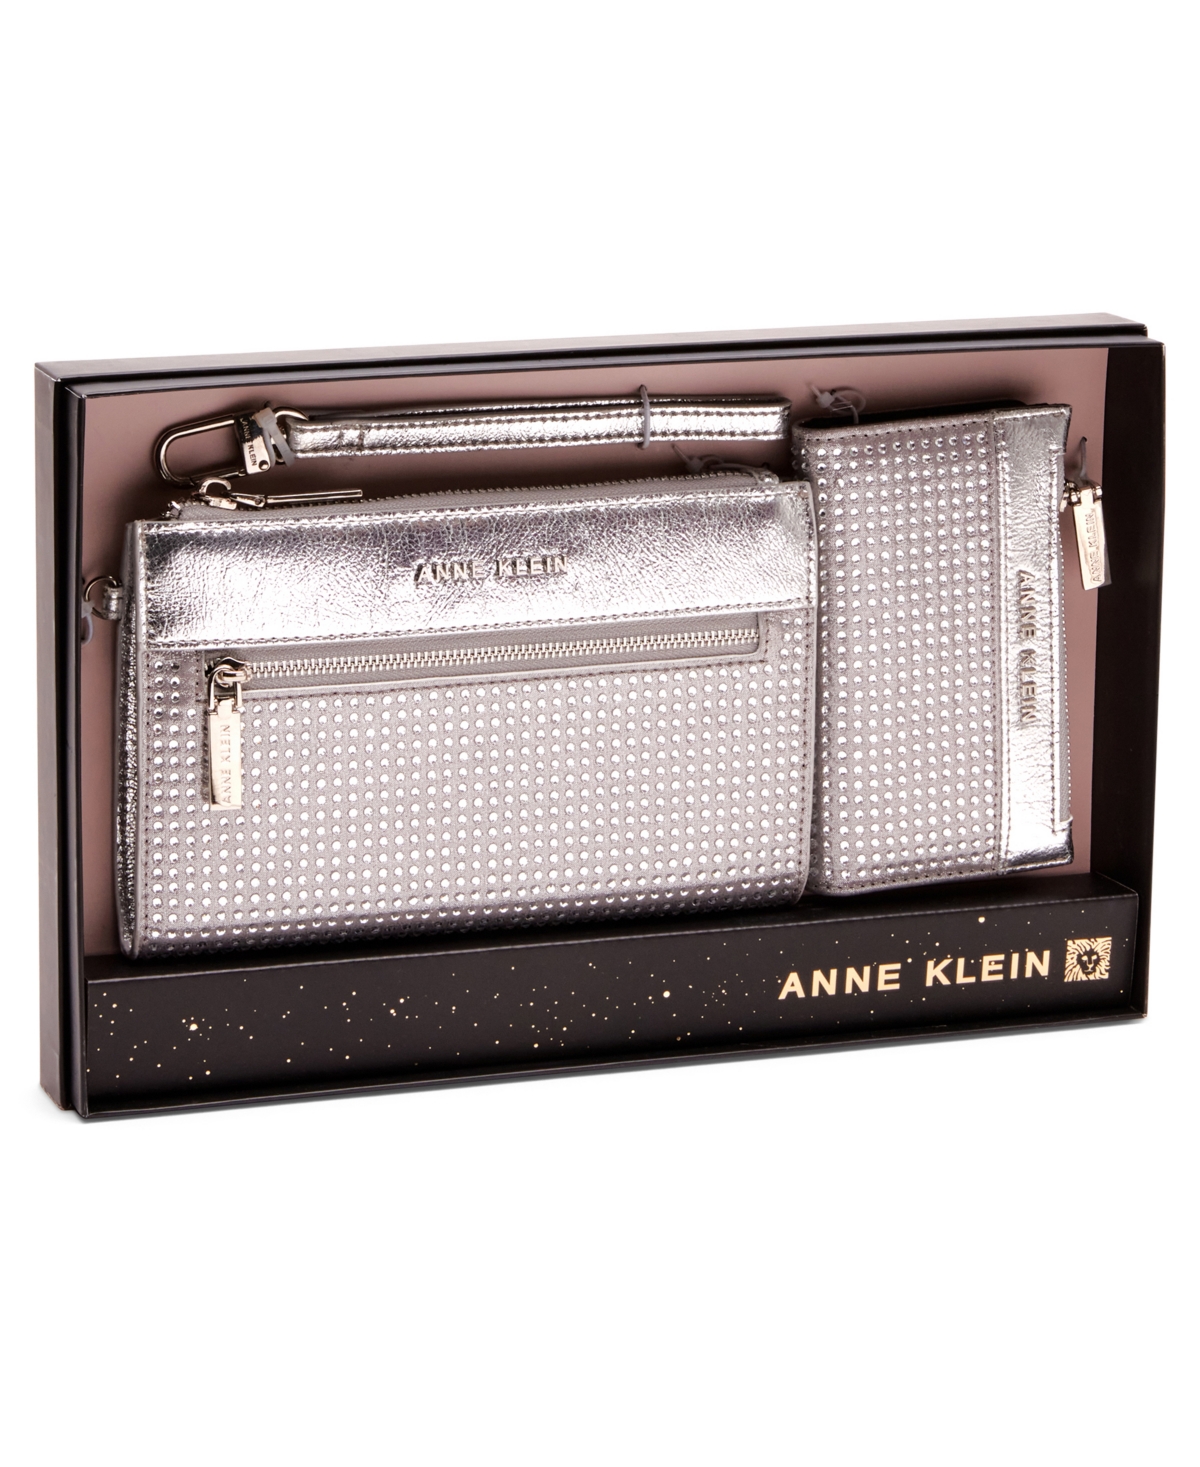 Anne Klein Rhinestone Zip Clutch And Card Case Gift Set, 2 Piece In Silver